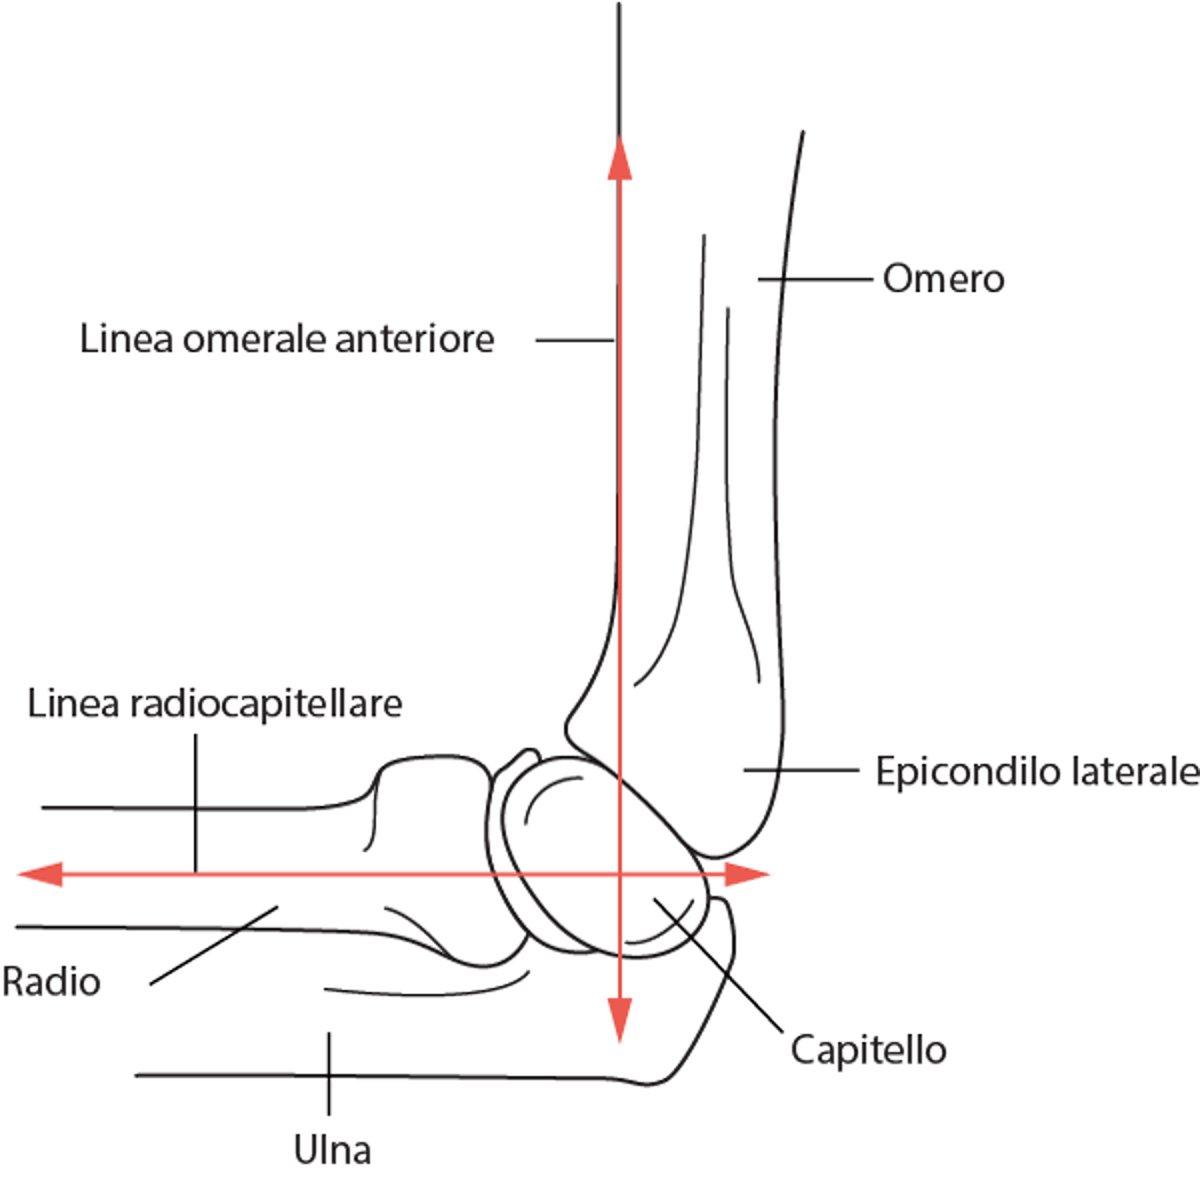 Linea omerale anteriore e linea radiocapitellare